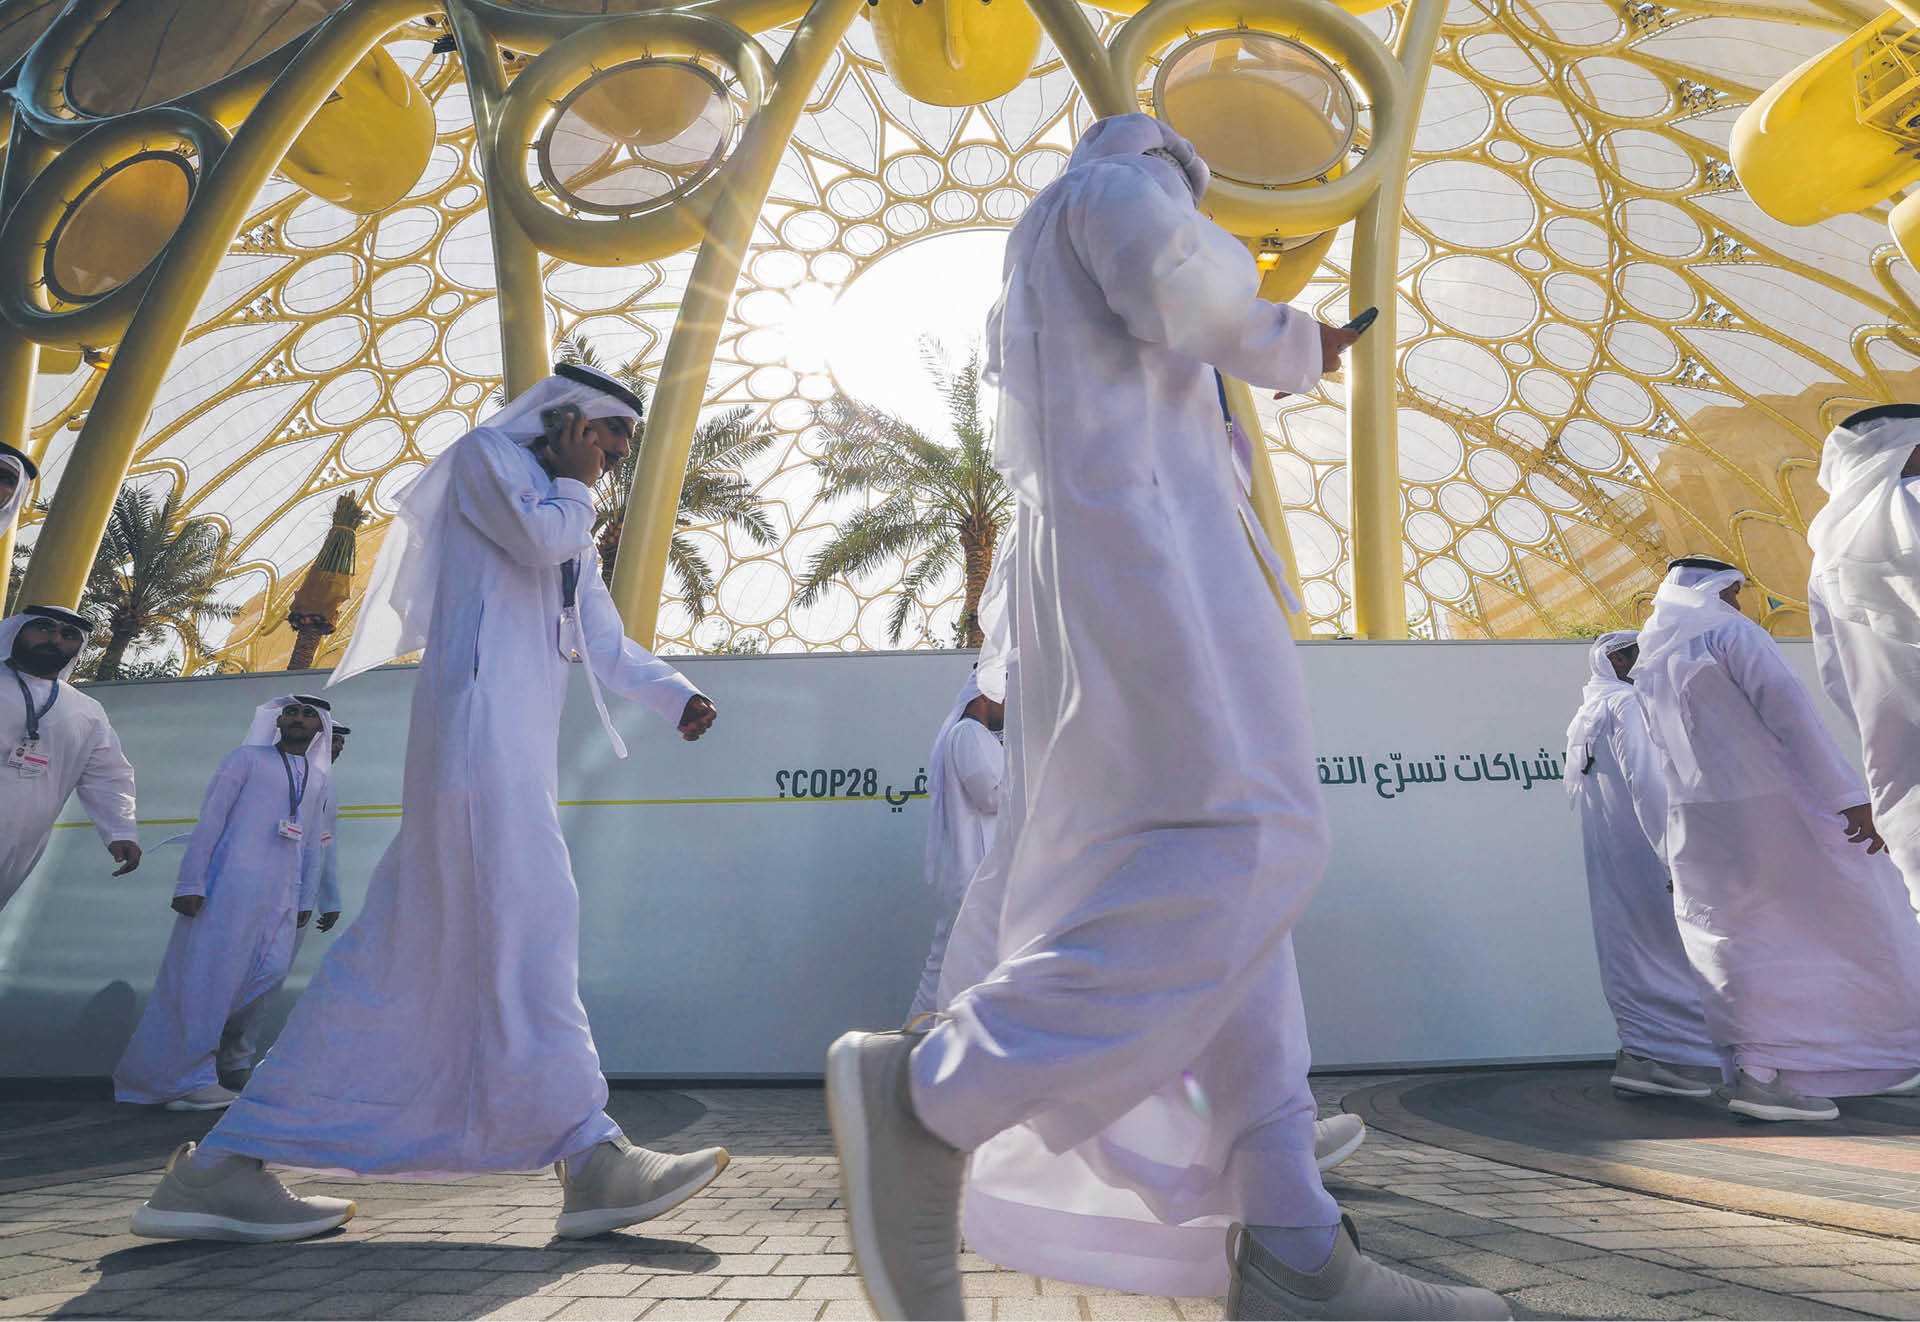 Szczyt COP28 odbywa się w Zjednoczonych Emiratach Arabskich